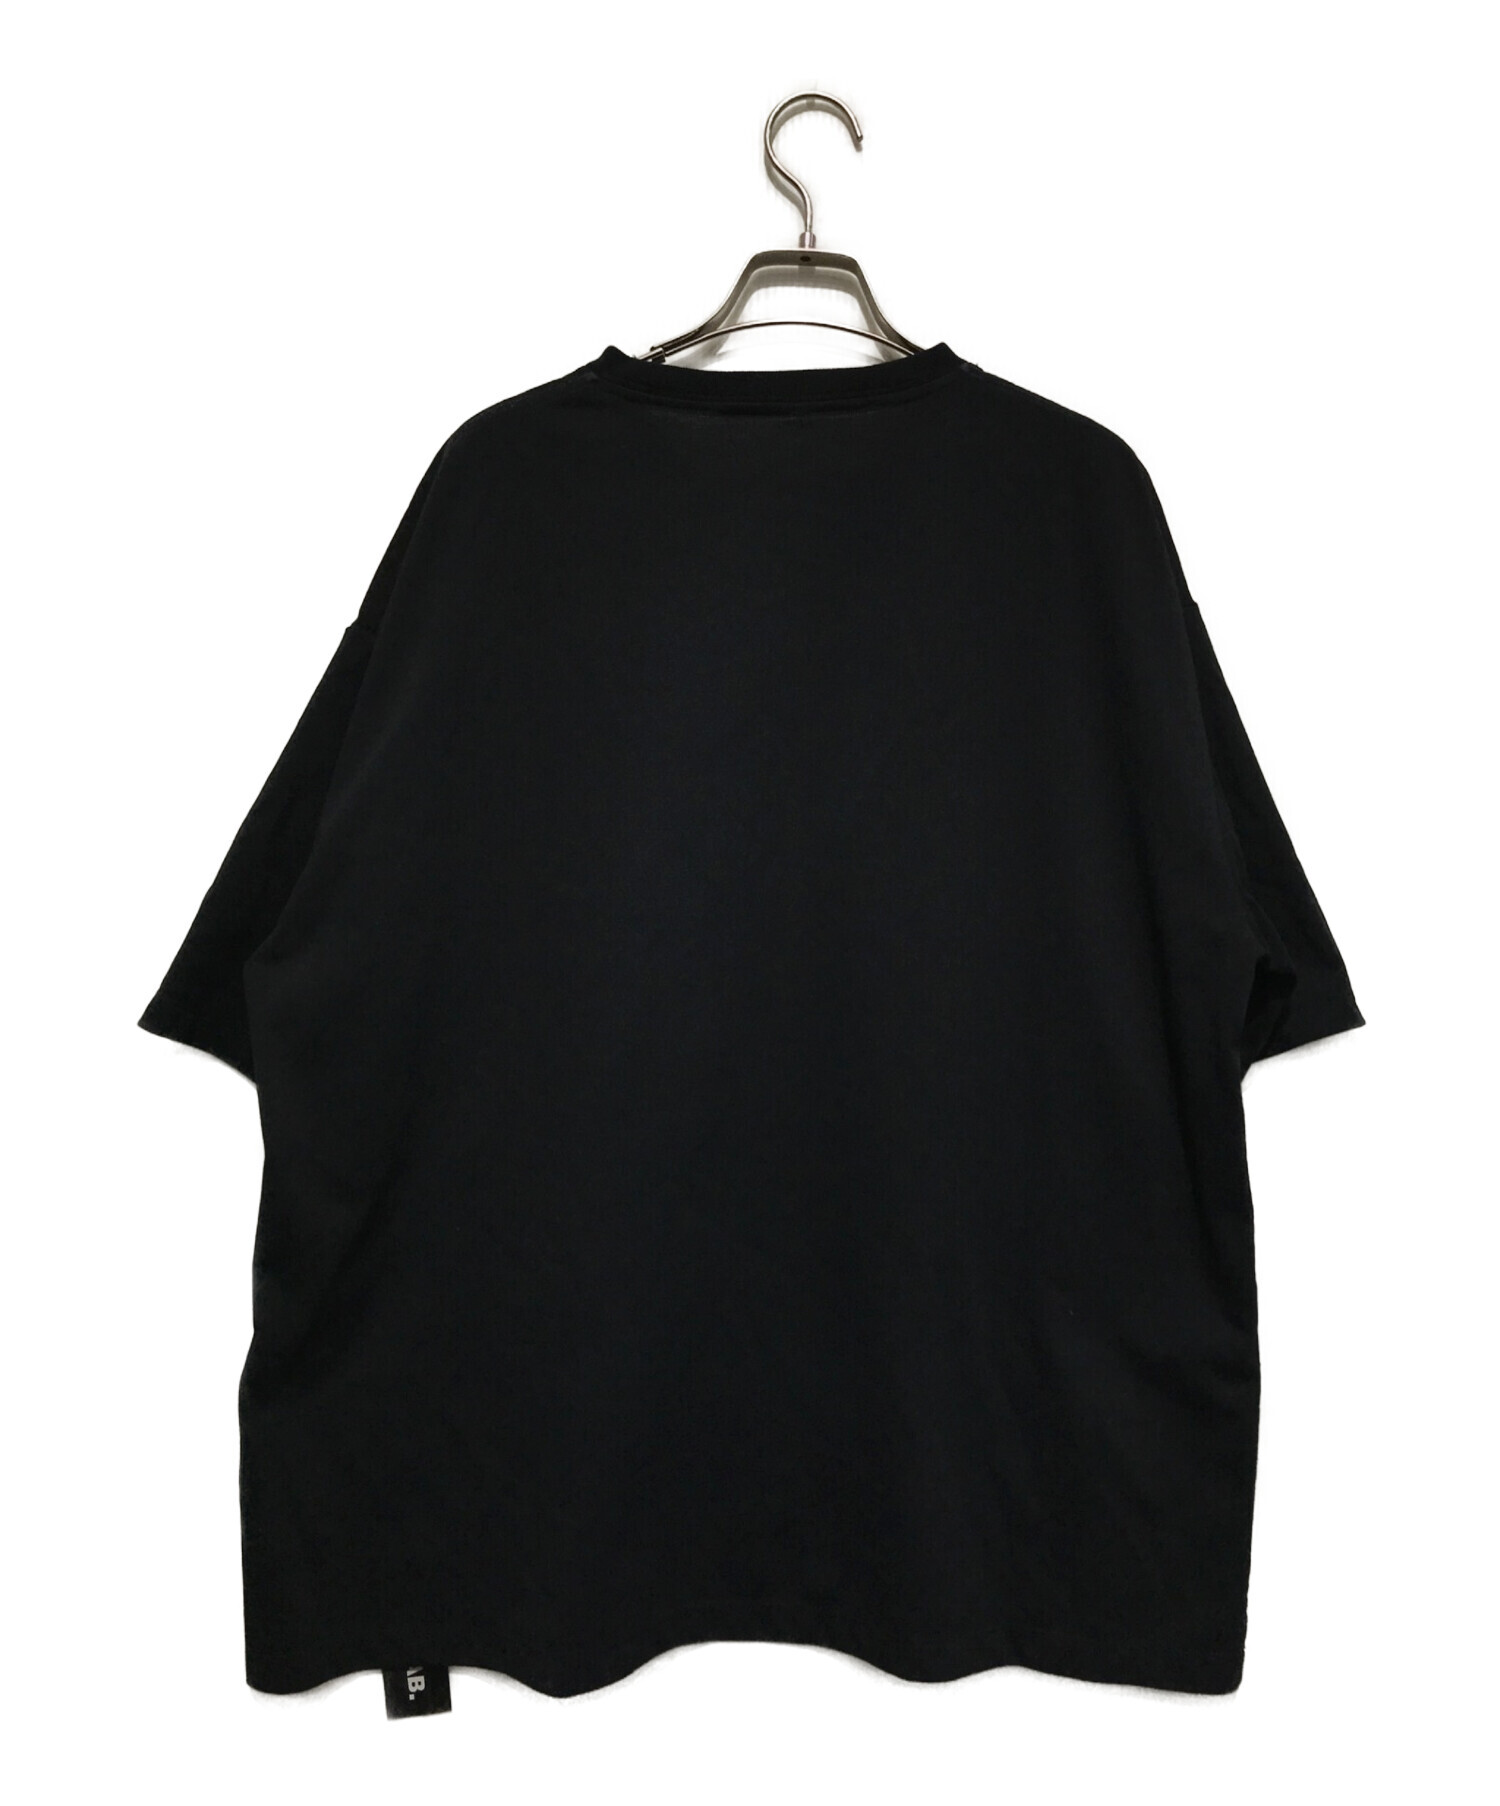 PRODUCT LAB (プロダクトラボ) LAB.CKET Tシャツ ブラック サイズ:M